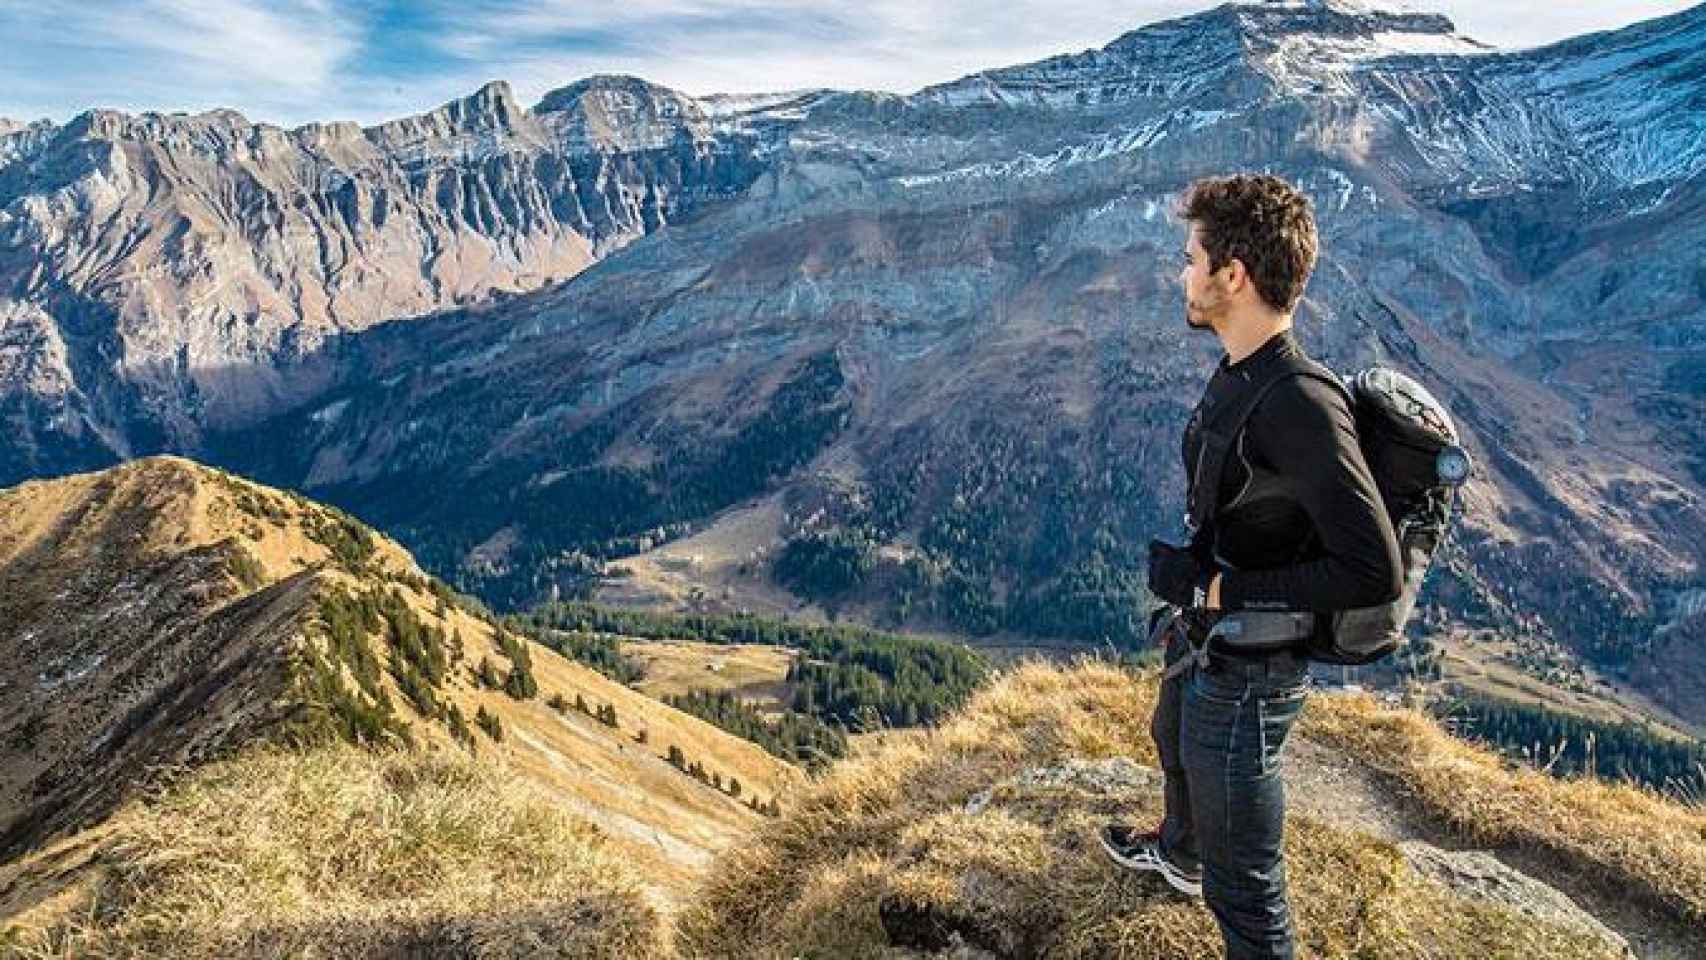 Un chico observa las montañas que ha subido en una excursión / PIXABAY